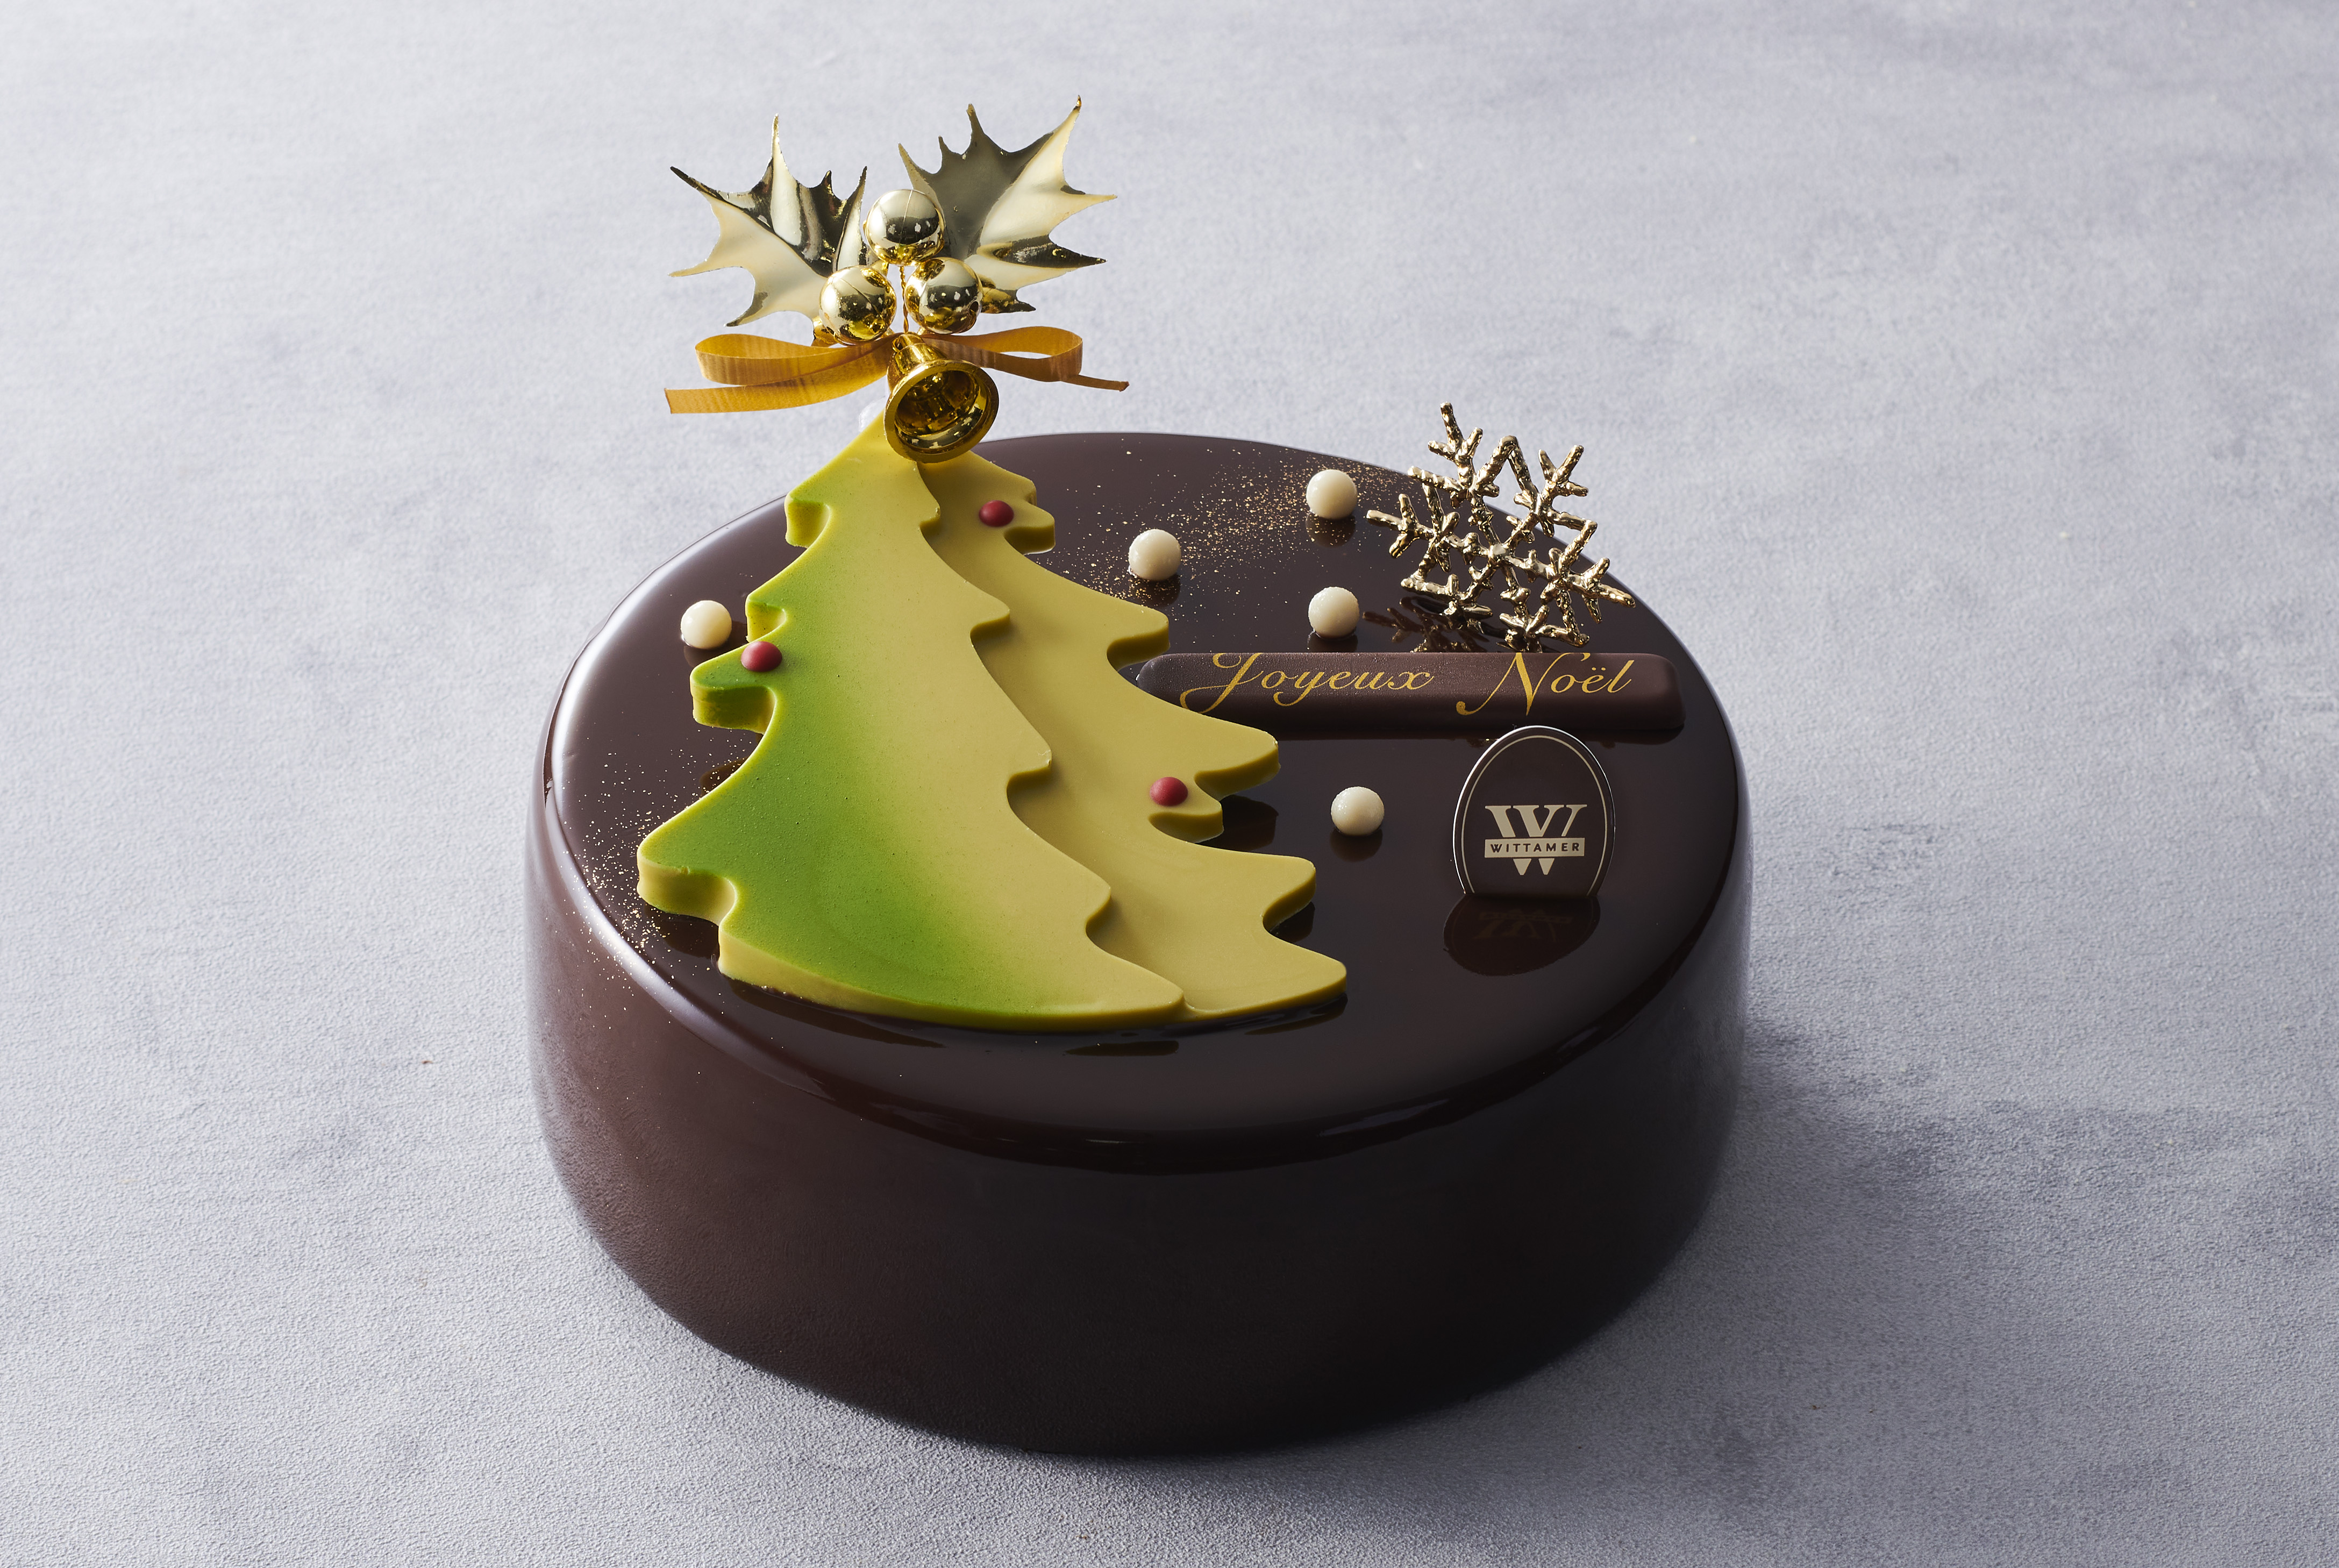 ベルギー王室御用達チョコレートブランド「ヴィタメール」がお届けする2021年クリスマスケーキコレクション10月中旬よりご予約受付開始のサブ画像1